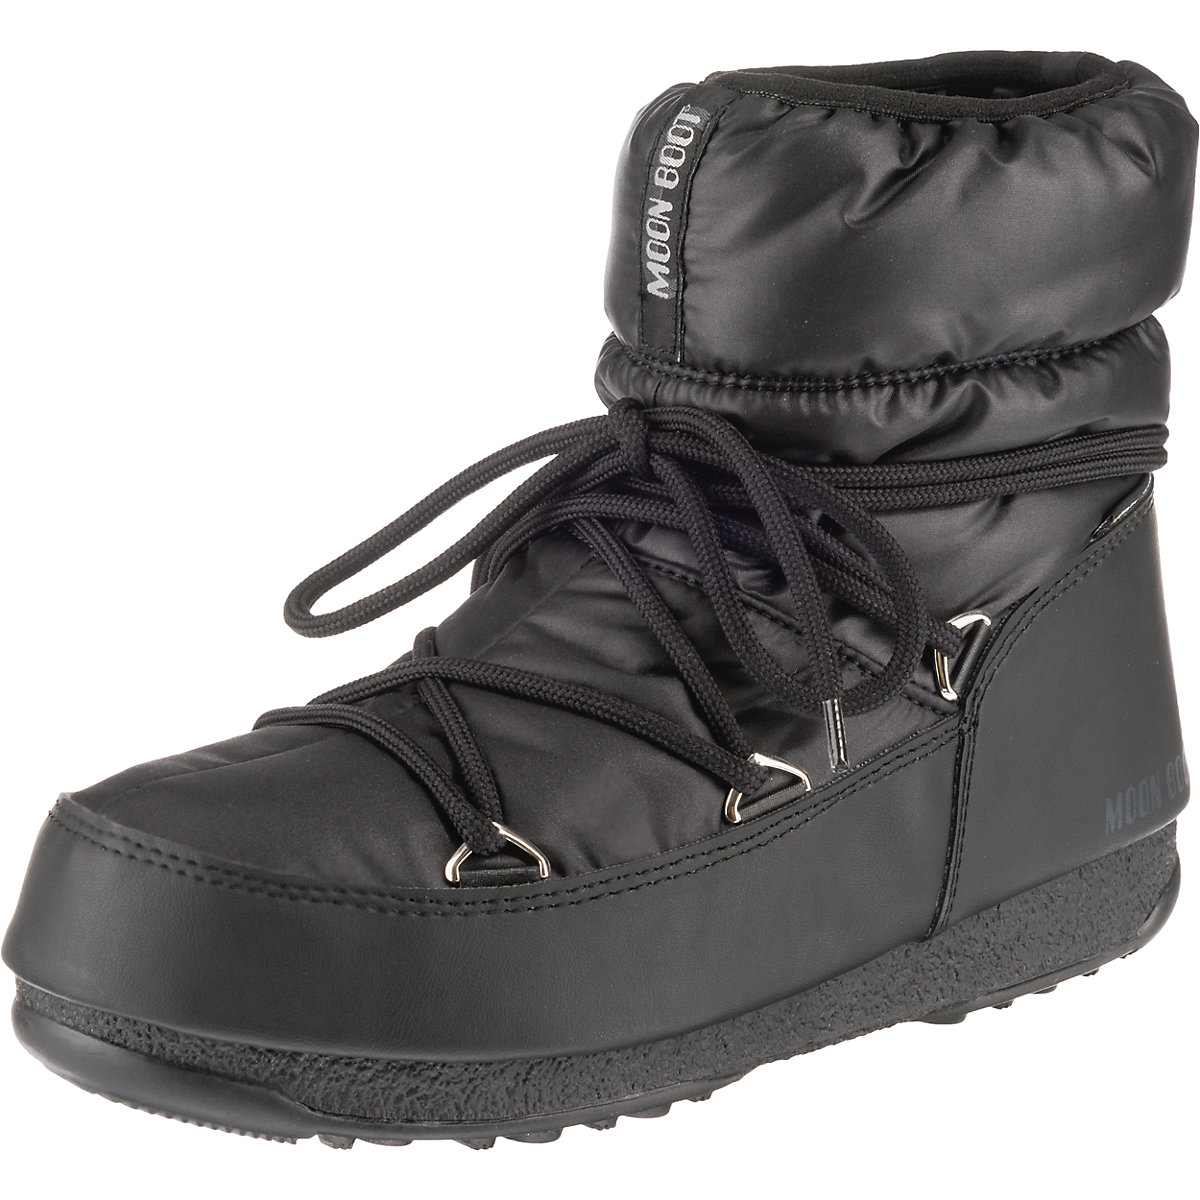 Original Tecnica Moon Boots® LOW Nylon WP 2 Damen